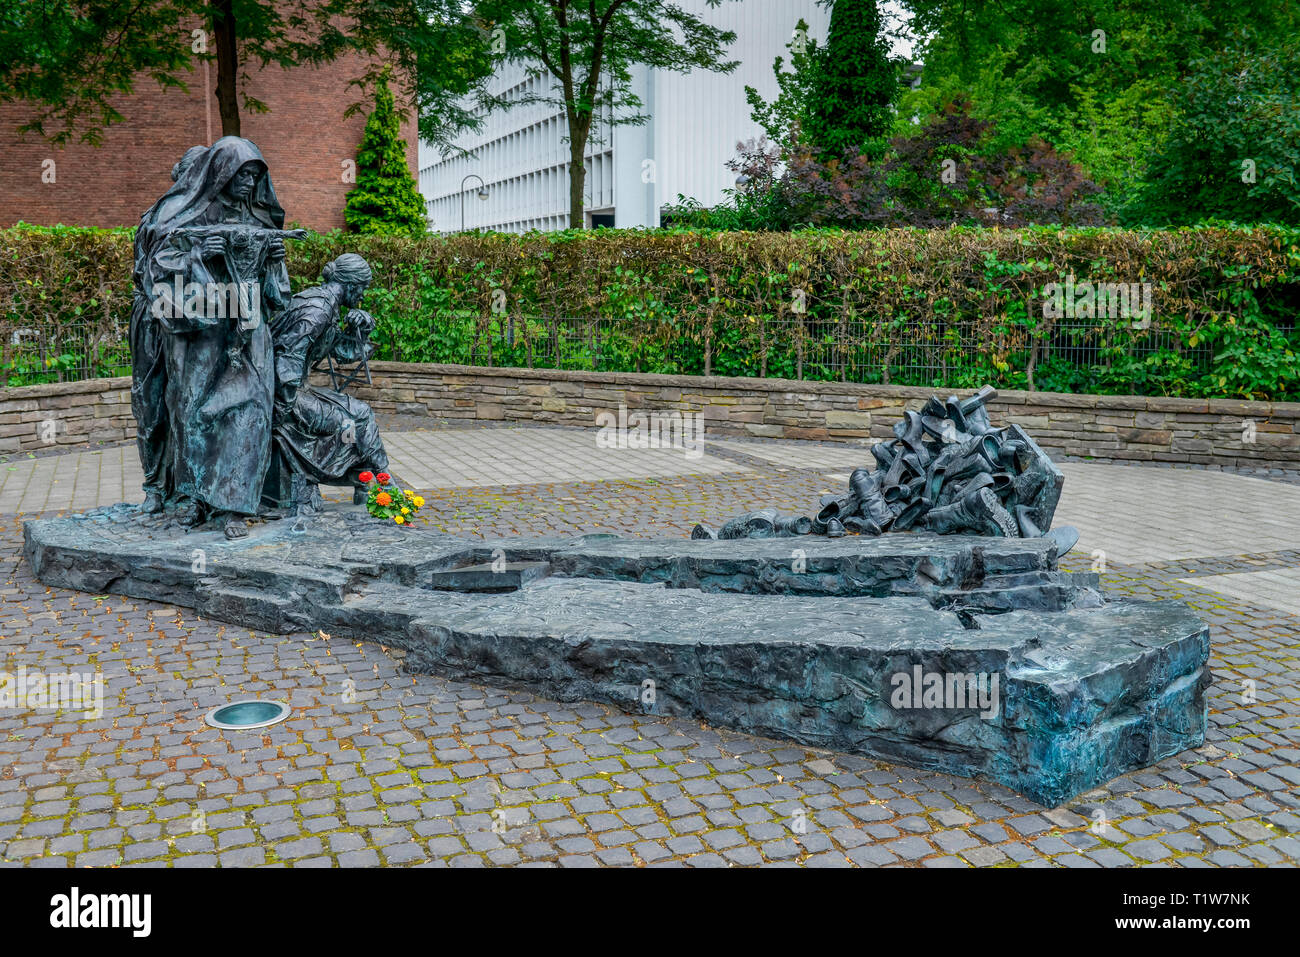 Edith-Stein-Denkmal, Boersenplatz, Koeln, Nordrhein-Westfalen, Deutschland, Börsenplatz Banque D'Images